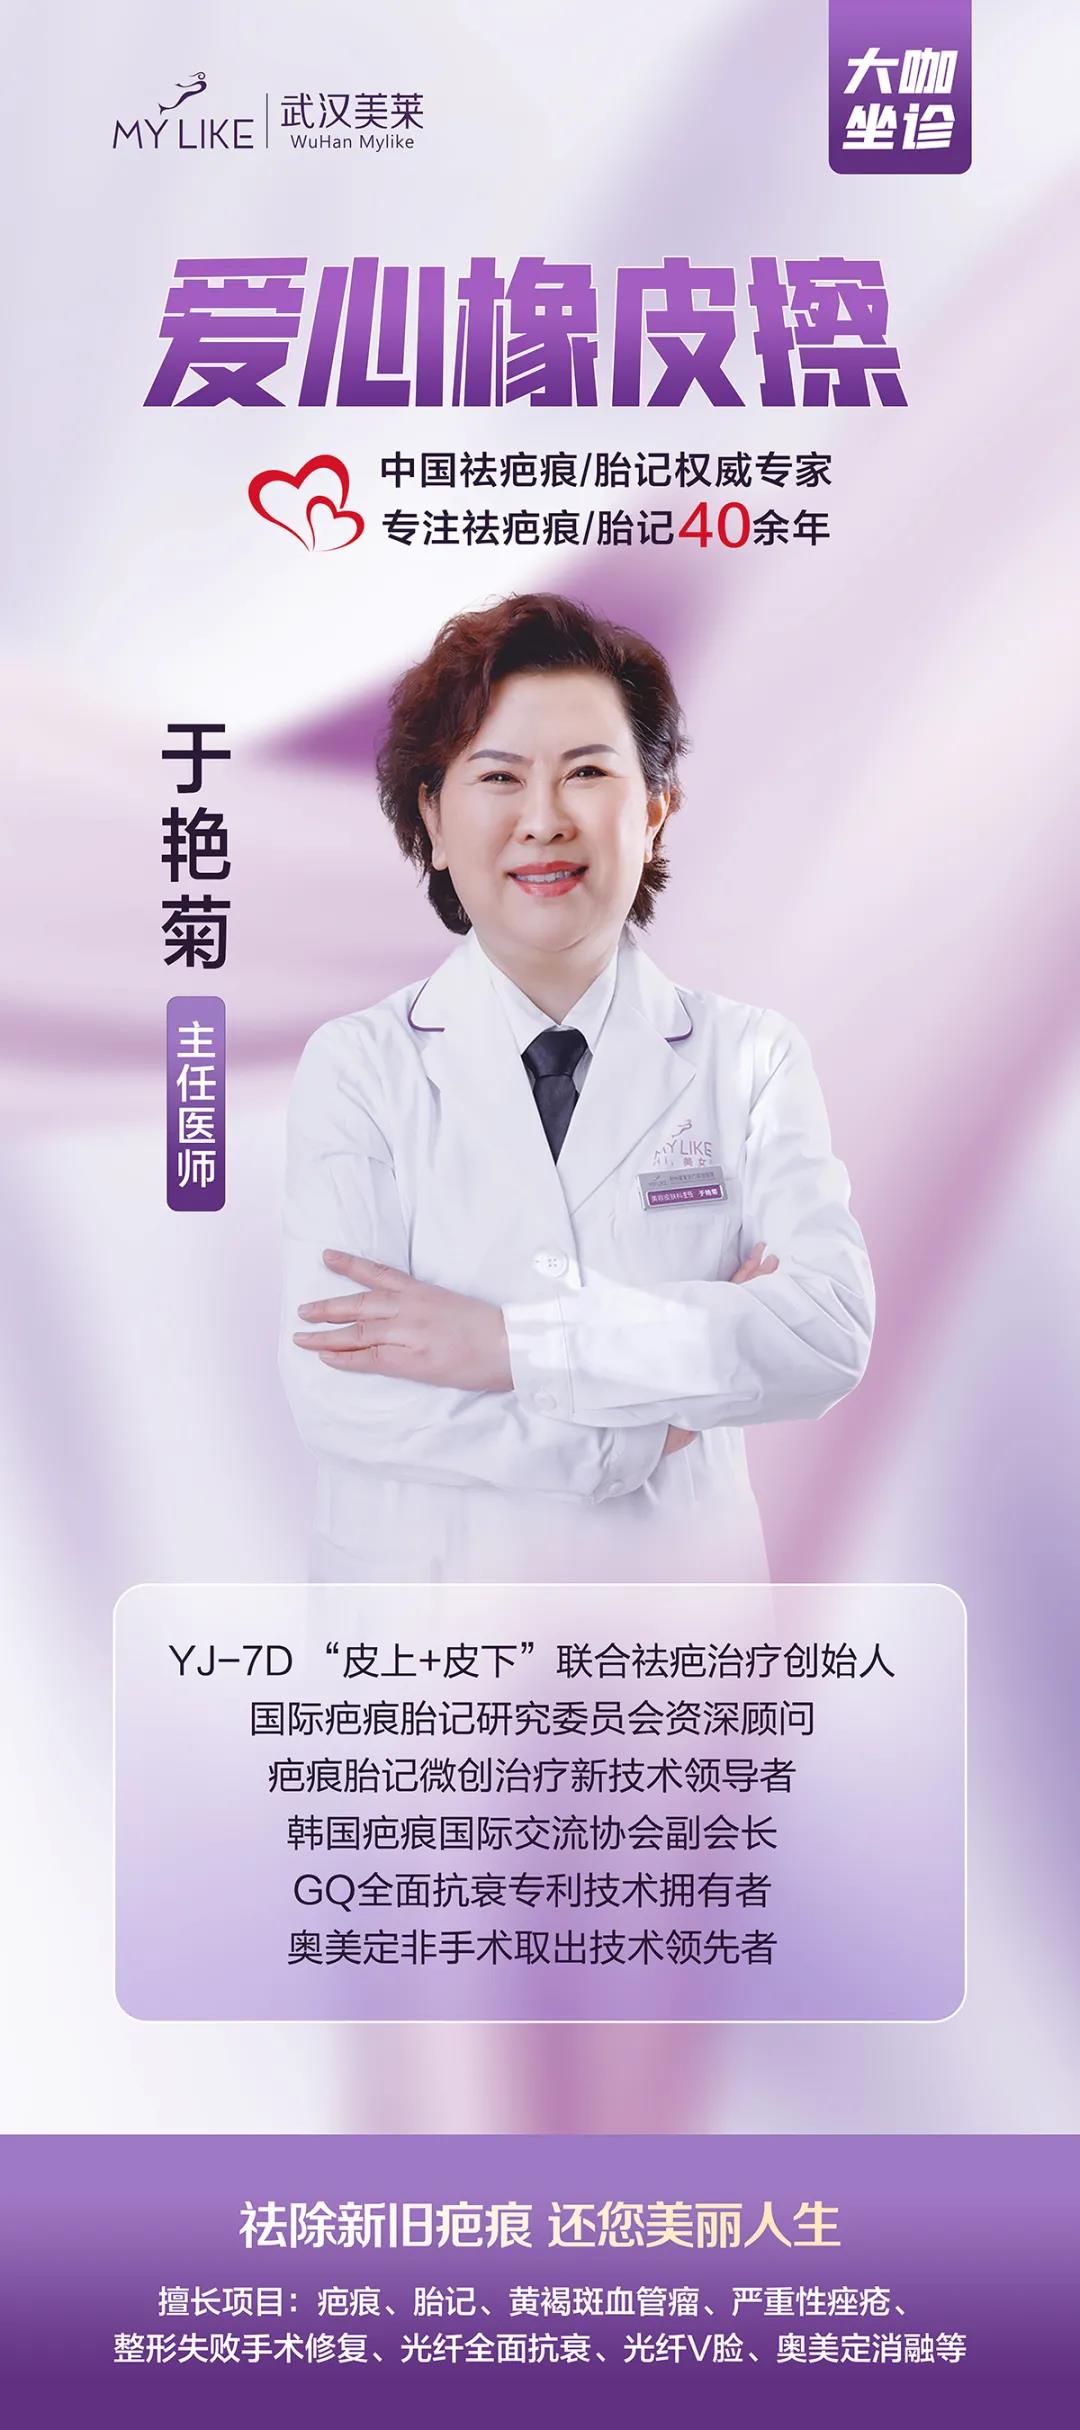 武汉美莱美容医院，于艳菊教授坐诊时间4月15日-18日，